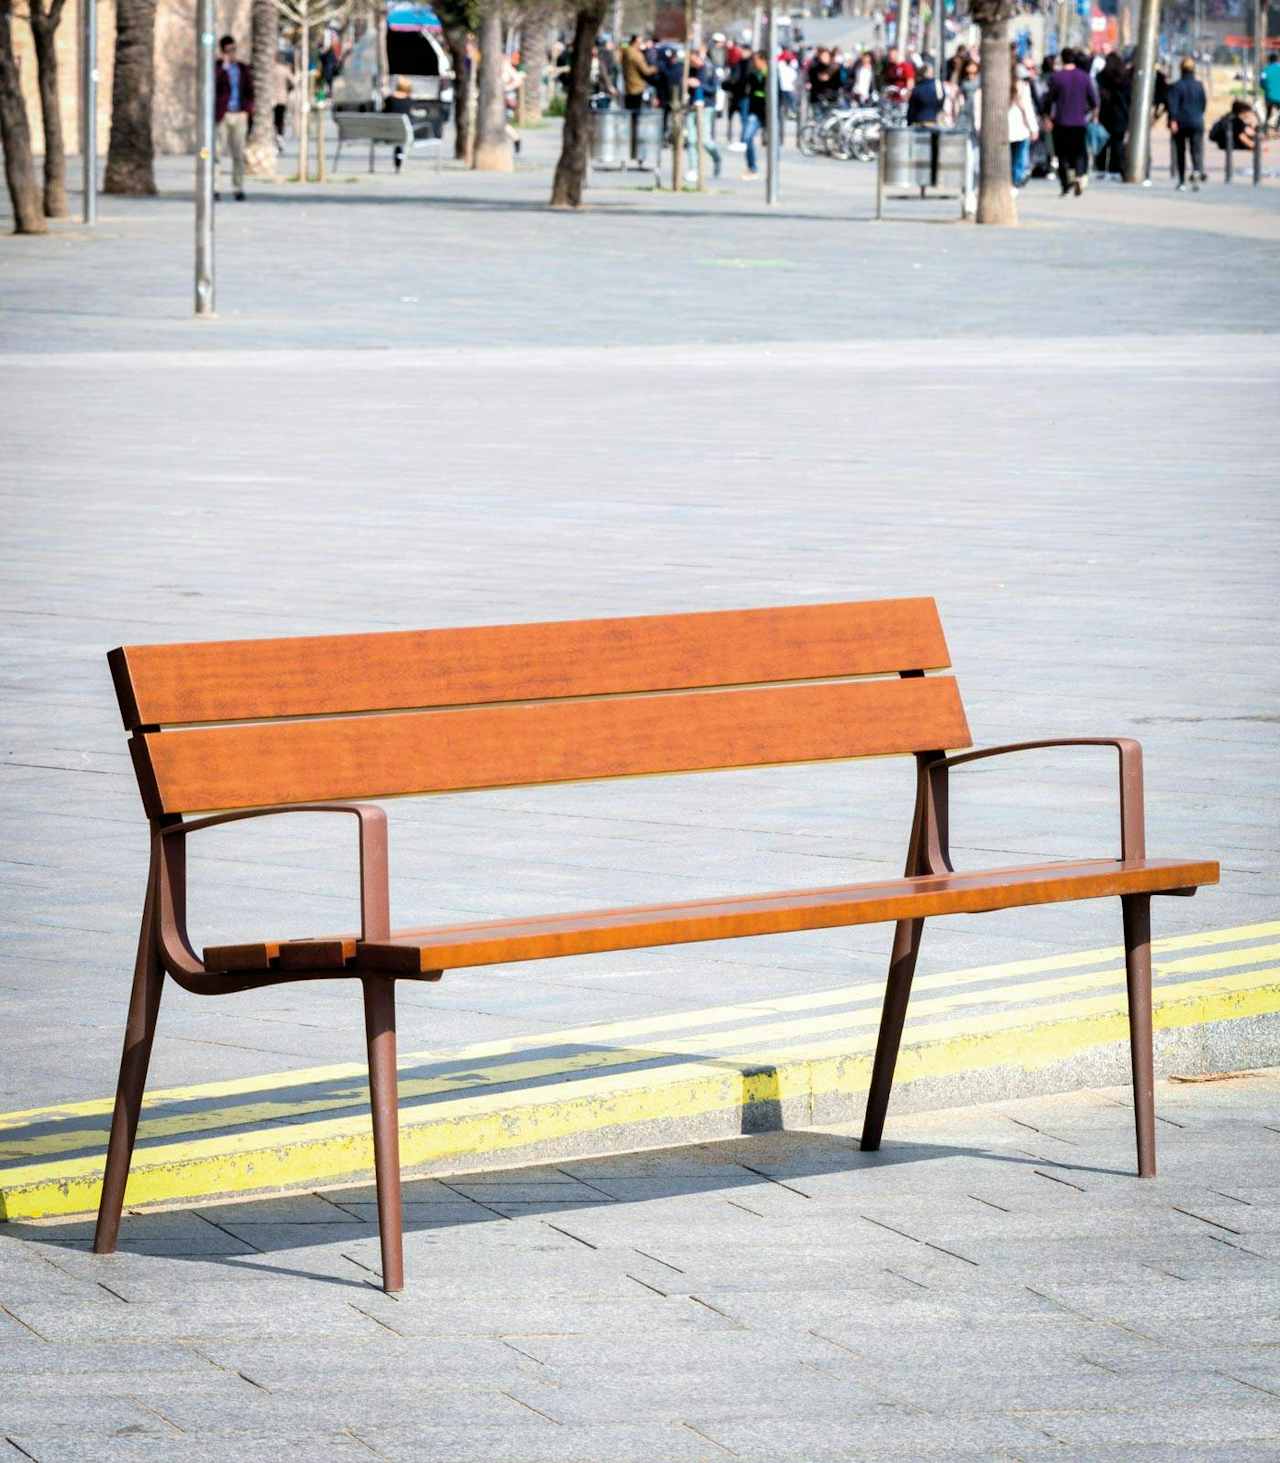 public park benches